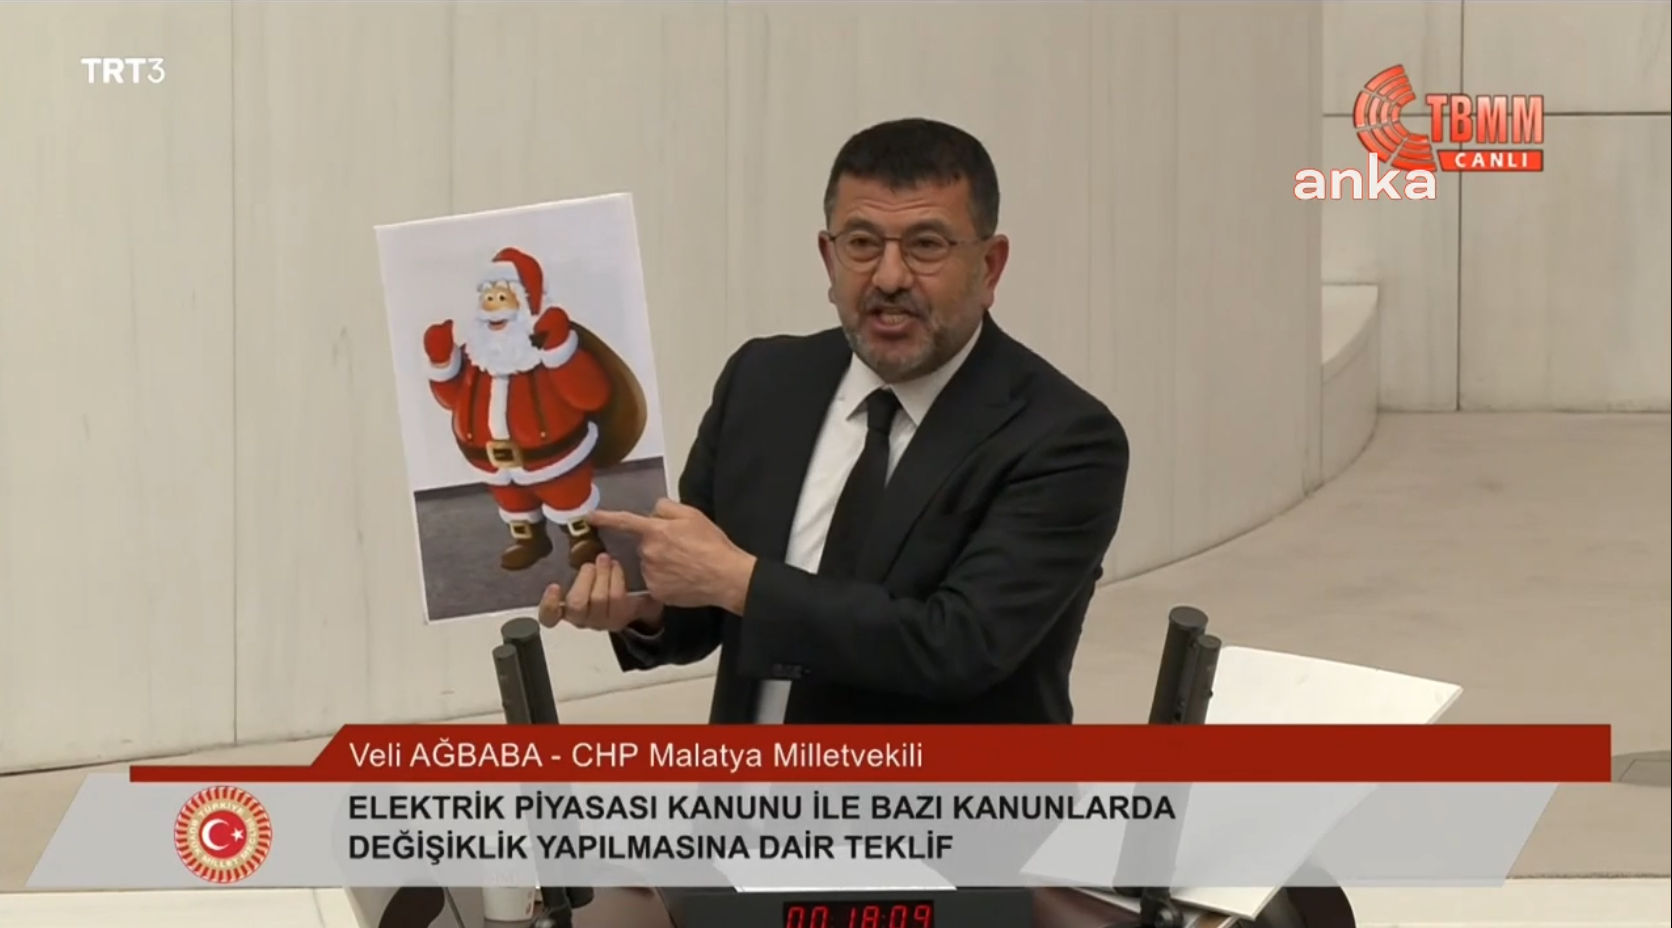 CHP'li Ağbaba: Yandaşa Noel Baba, vatandaşa gelince gece 3’te gelen davetsiz maskeli gibisiniz